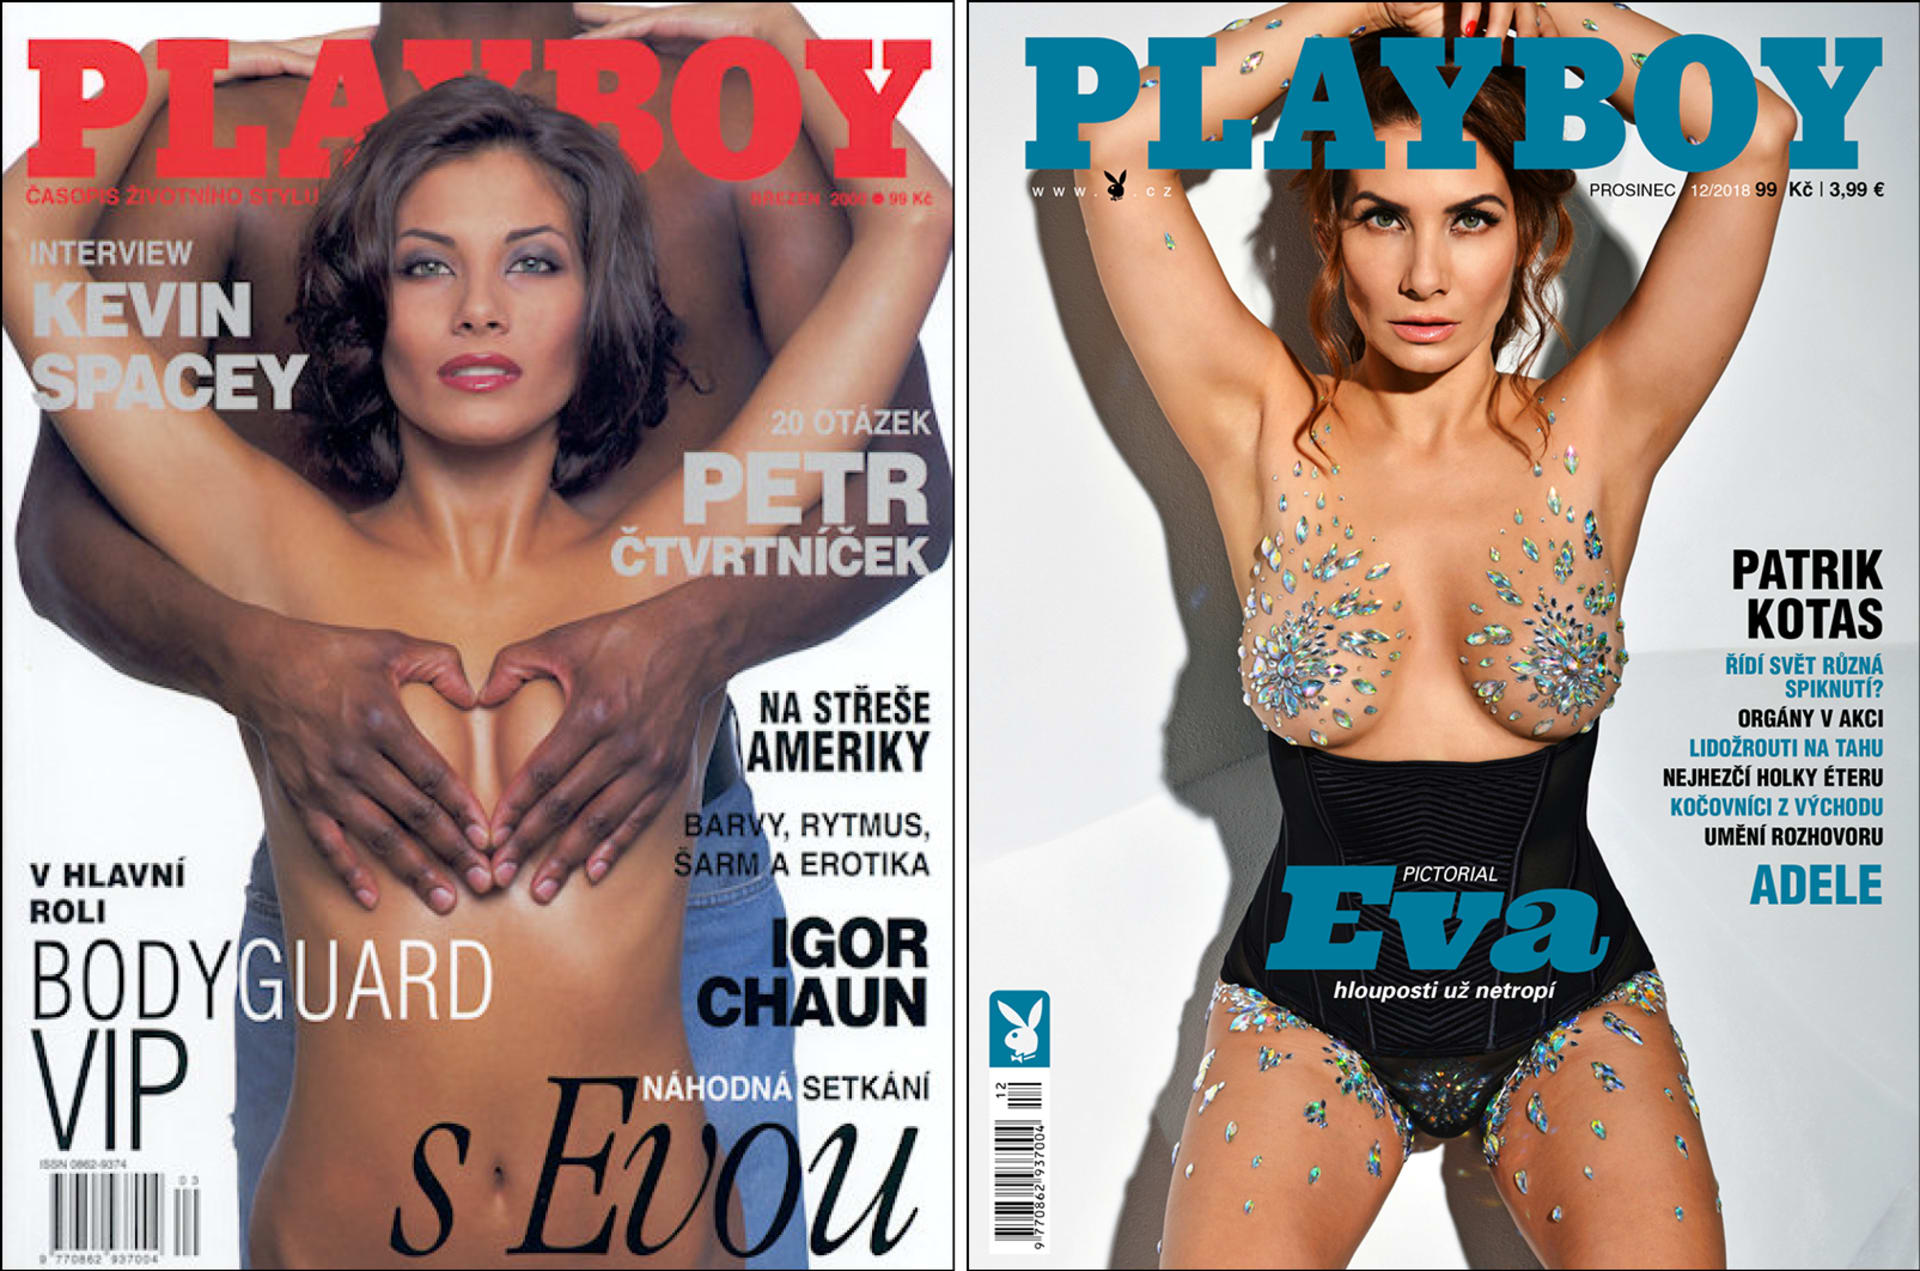 Eva znovu ovládla titulní stranu časopisu Playboy po téměř dvaceti letech.